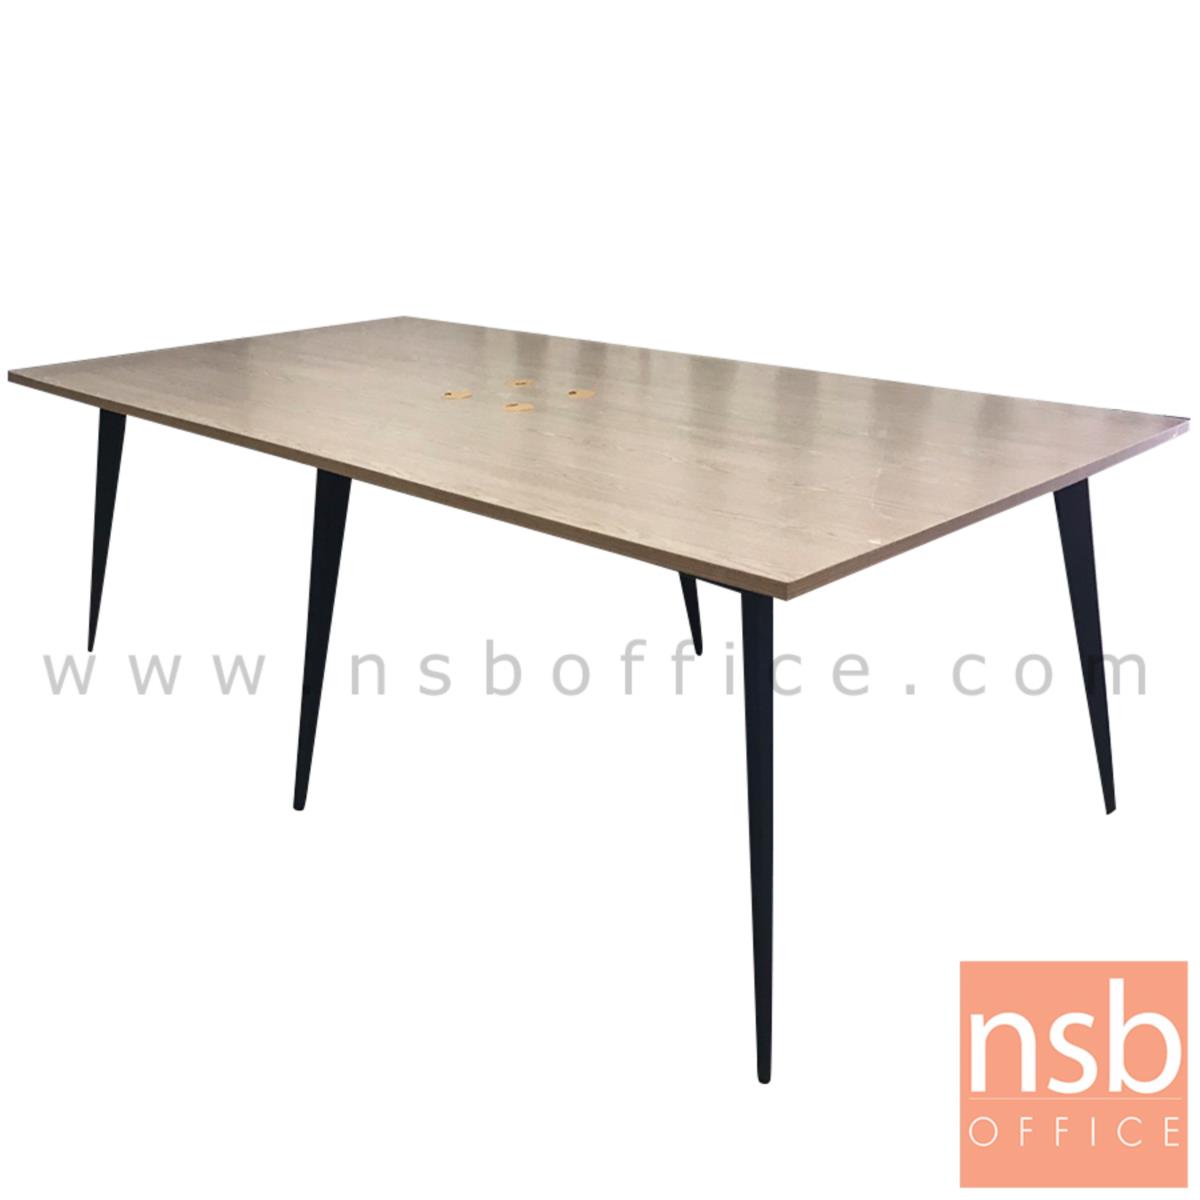 A05A196:โต๊ะประชุมทรงสี่เหลี่ยม รุ่น SKYLINE ขนาด 240W cm. ขาปลายเรียวหกเหลี่ยม สีเทาฟ้า